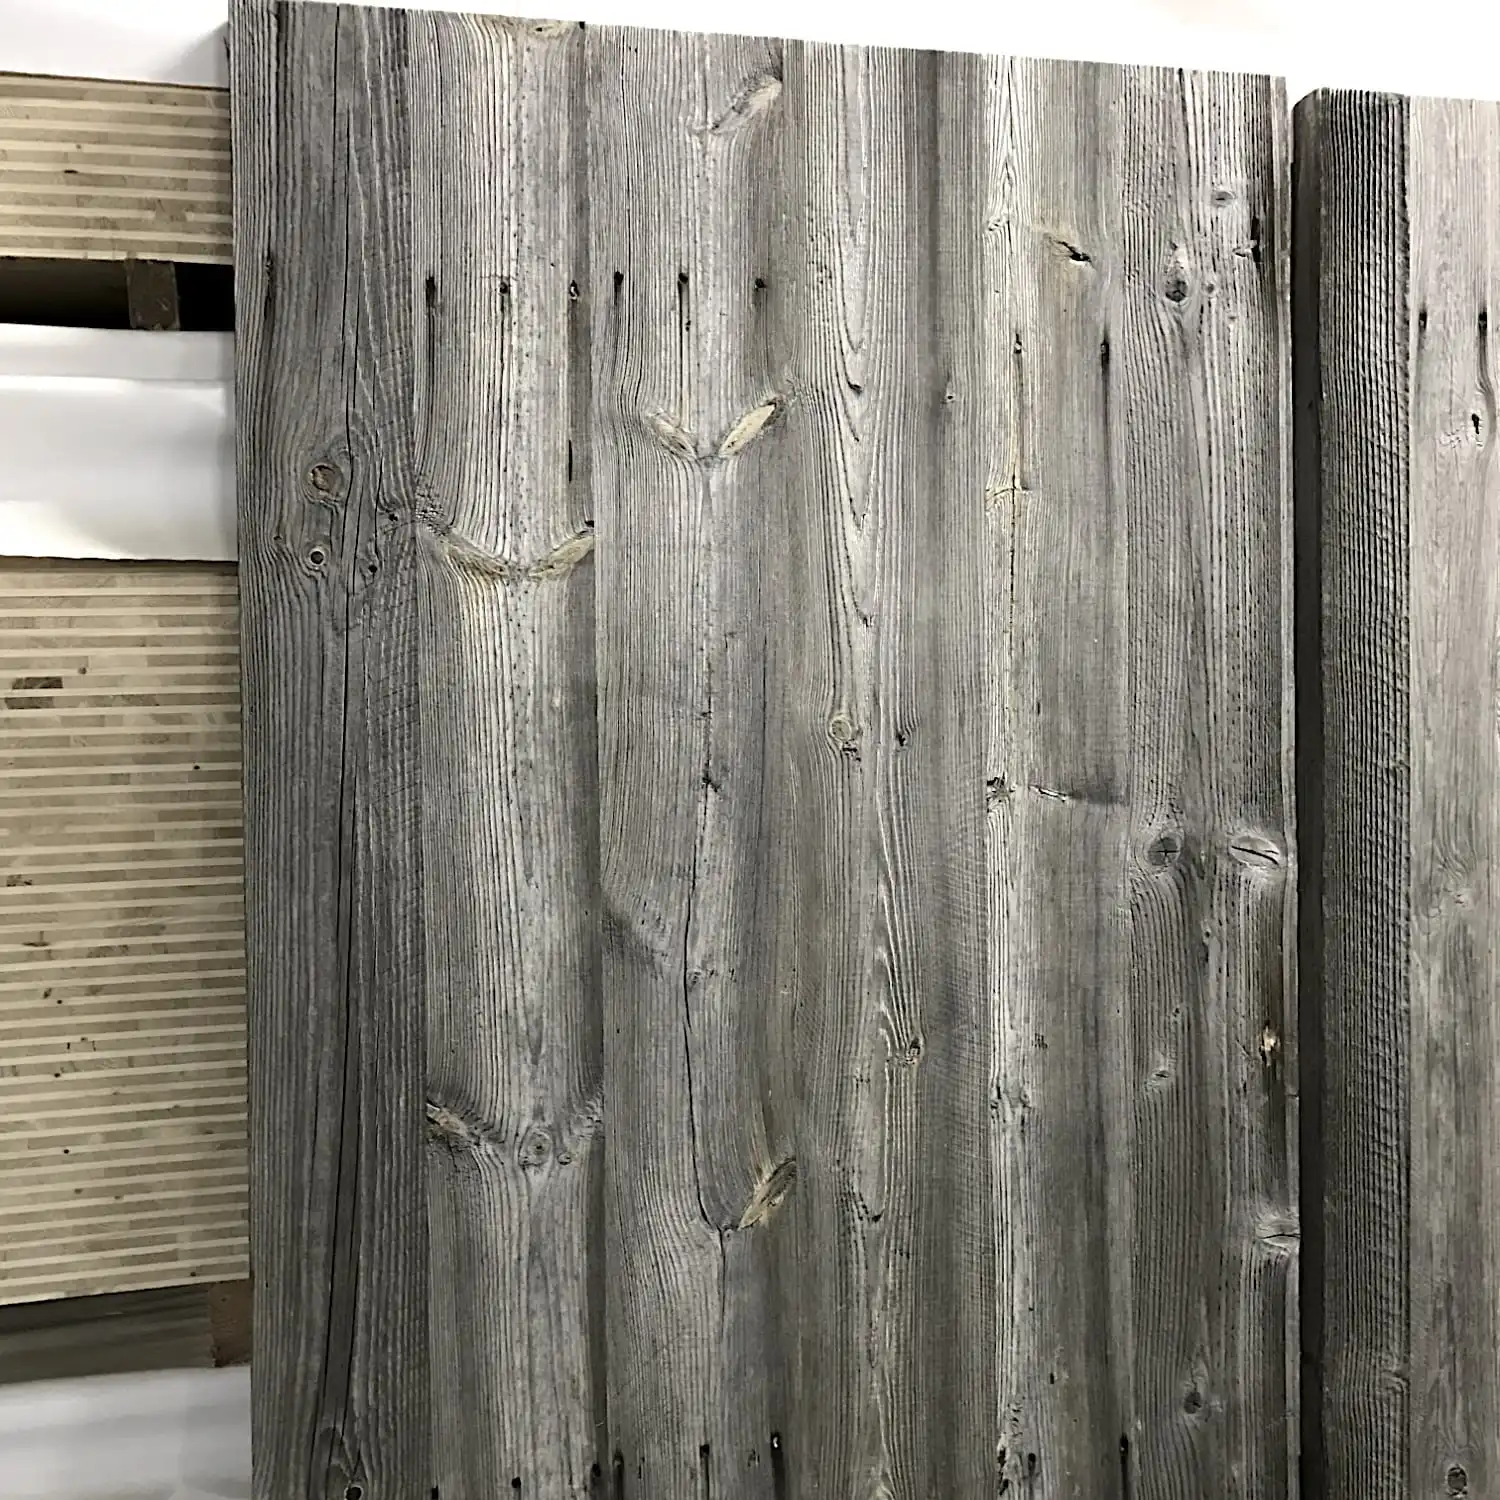  Panneaux de clôture en bois gris patiné, fabriqués à partir de vieux bois avec nœuds et grains visibles, posés contre un mur blanc. 